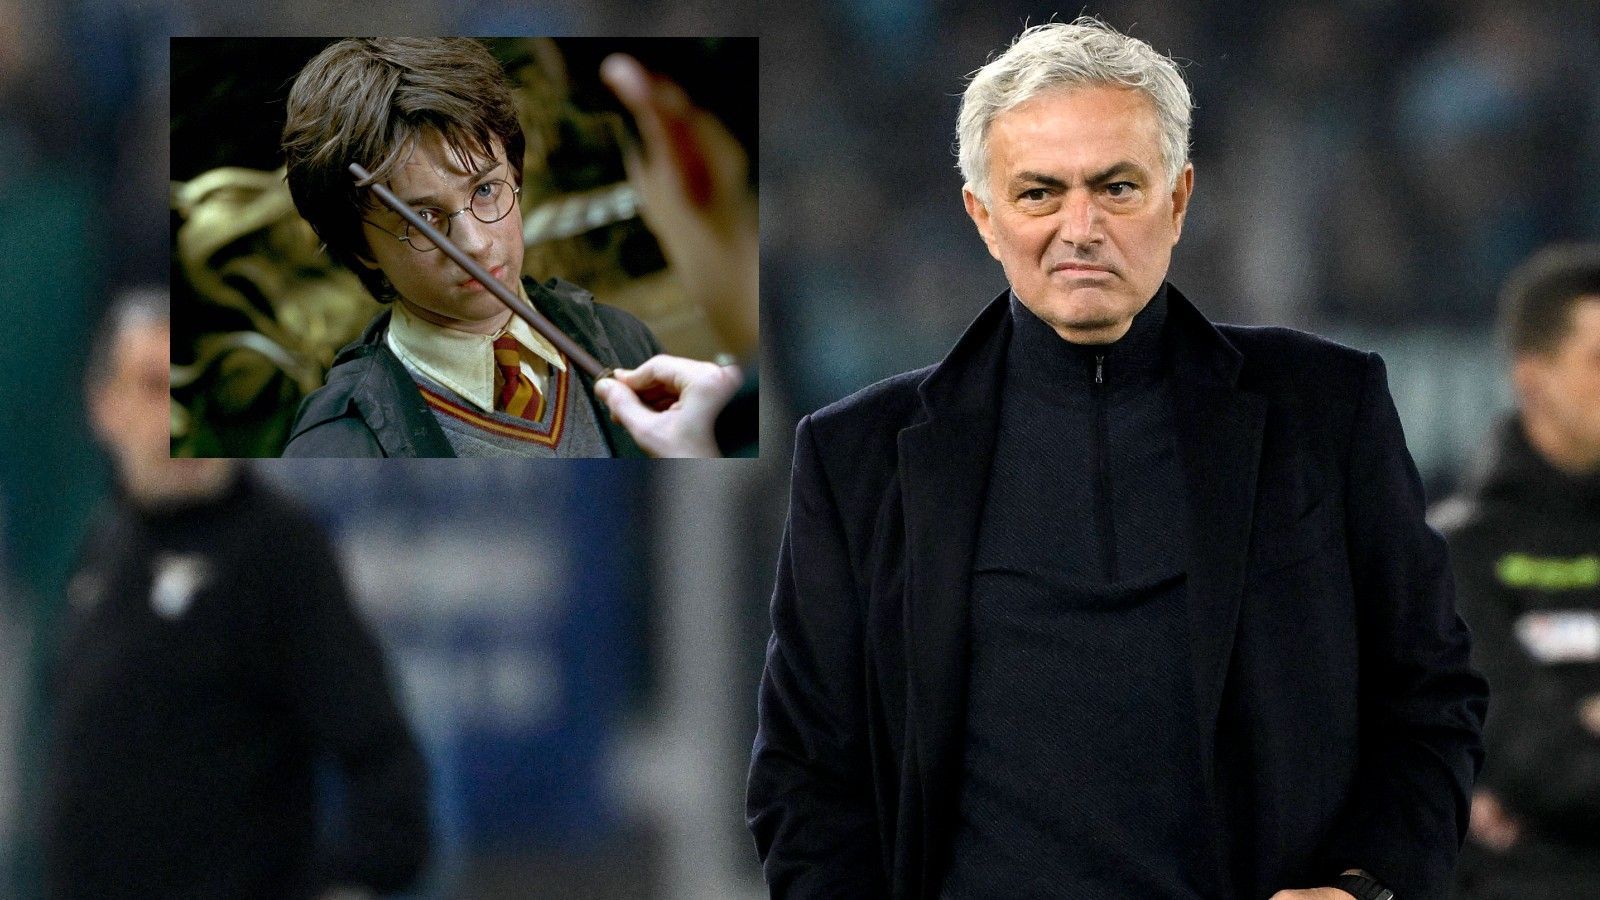 <strong>Mourinho vergleicht sich mit Harry Potter</strong><br>Jose Mourinho zeigt sich gewohnt demütig. Der mittlerweile ehemalige Coach der AS Rom hat sich als "Jose 'Harry Potter' Mourinho" bezeichnet. Damit wollte der Portugiese nach der Pokalpleite gegen Lazio andeuten, dass sich die Erwartungen an das, was der Verein erreichen kann, seit seiner Ankunft erhöht haben....